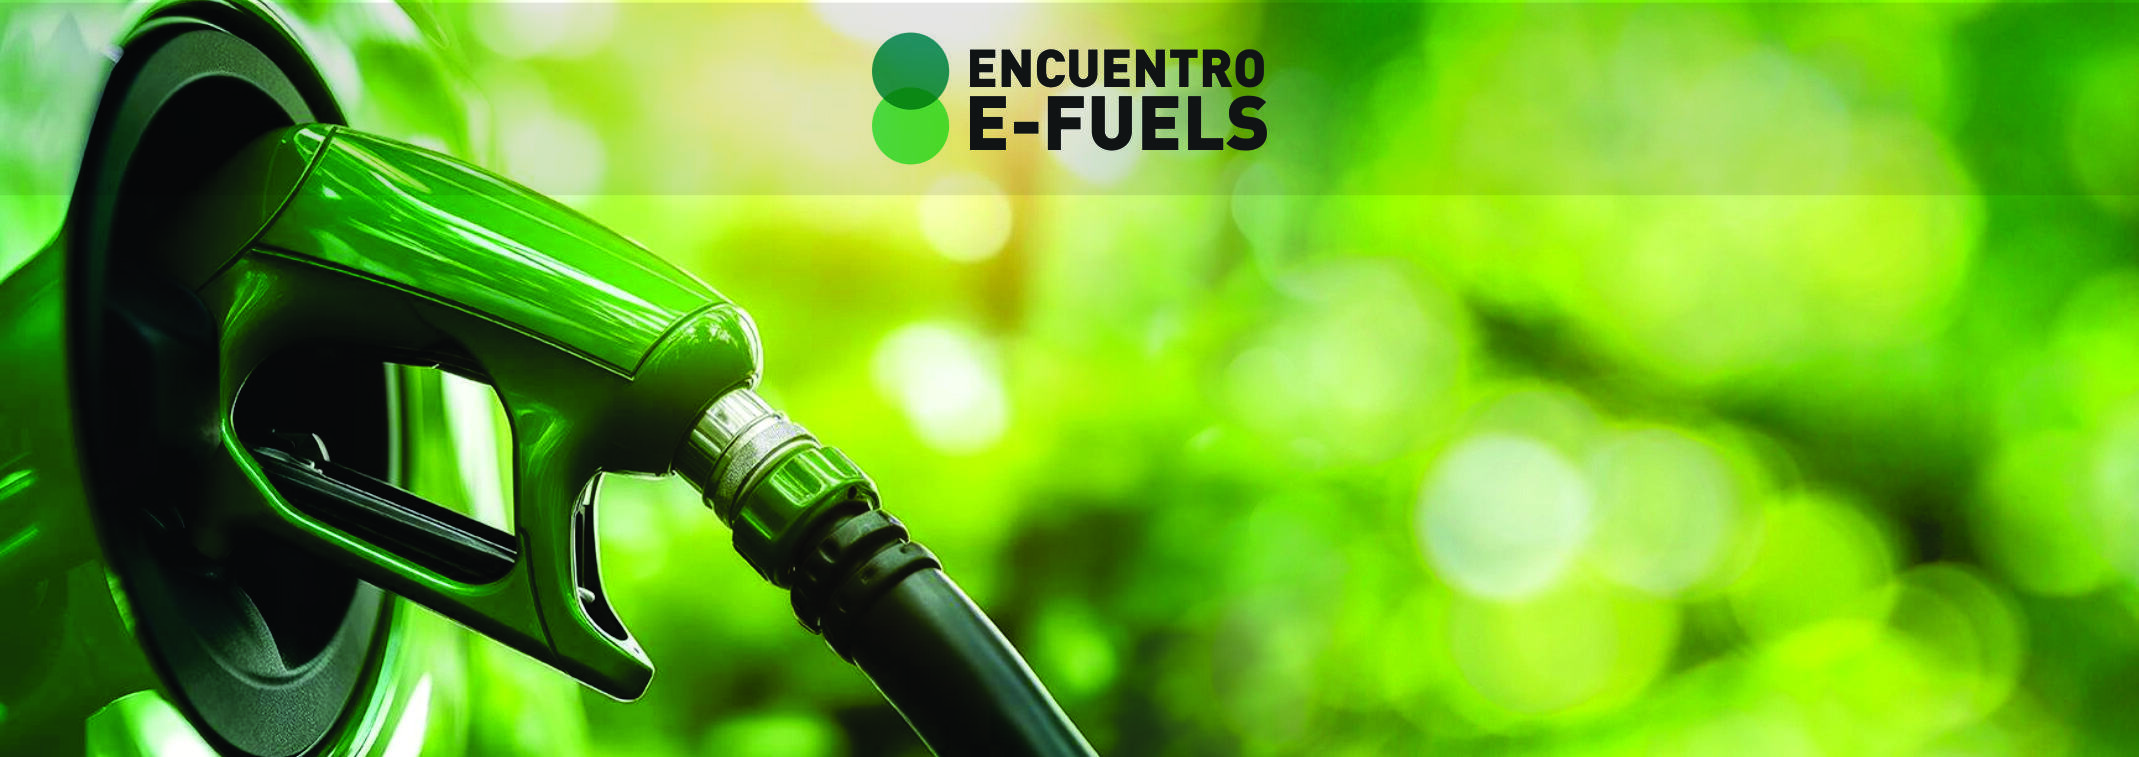 Encuentro E-Fuels